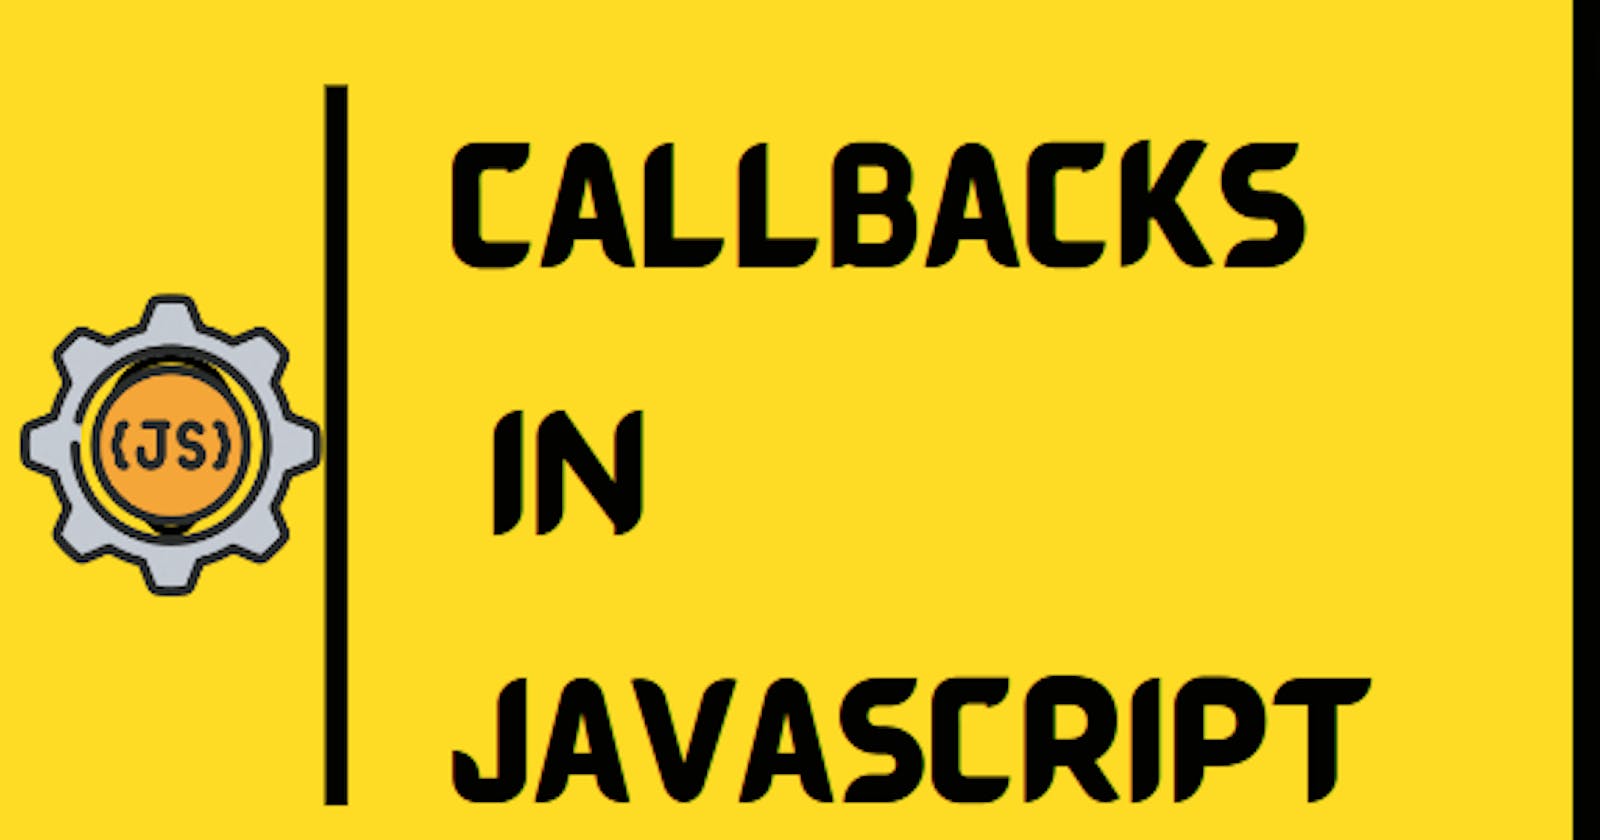 Callbacks in Javascript